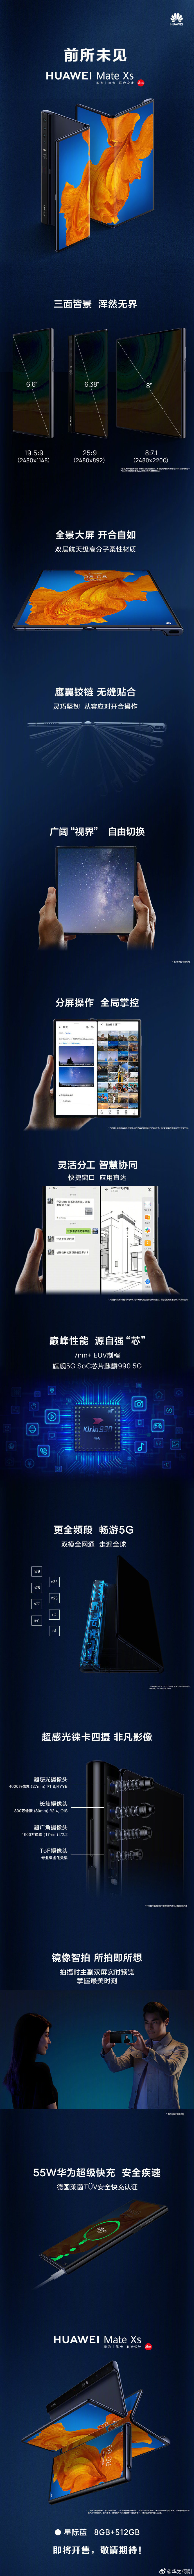 华为发布新款折叠屏手机Mate Xs 售价2499欧元